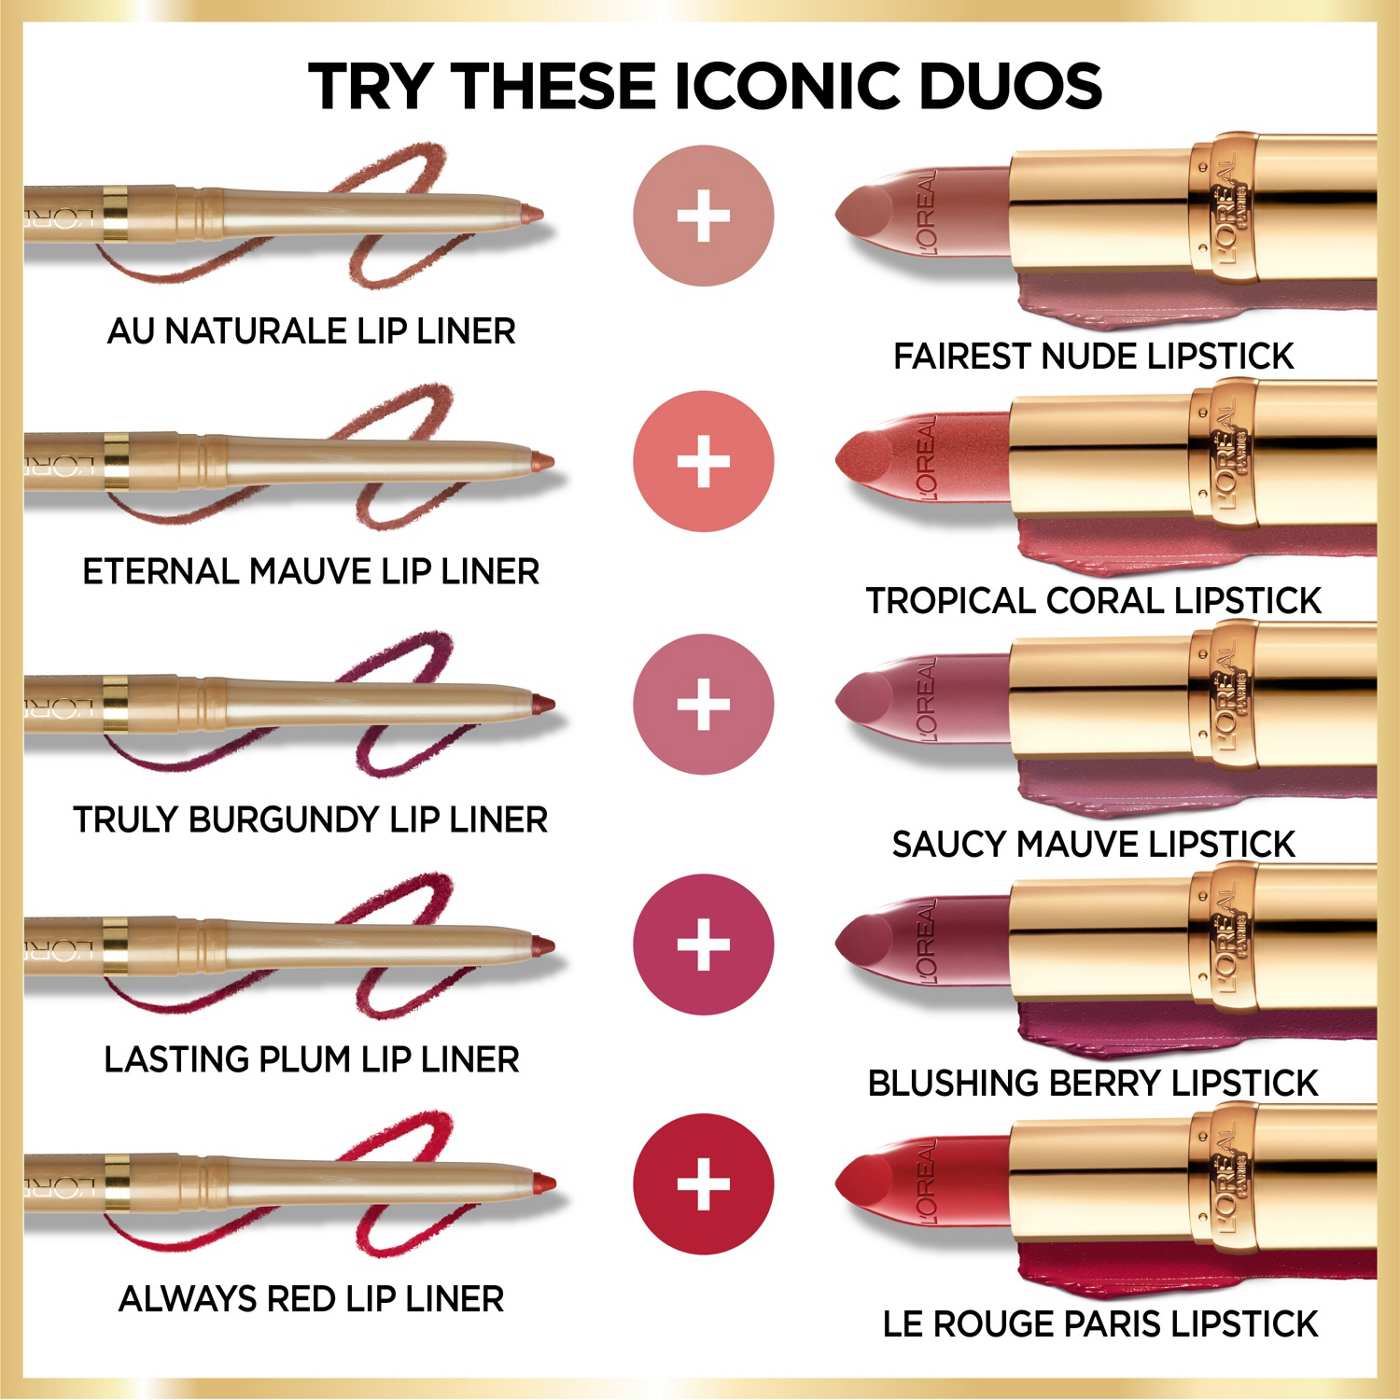 L'Oréal Paris Colour Riche Original Satin Lipstick - Fairest Nude; image 2 of 5